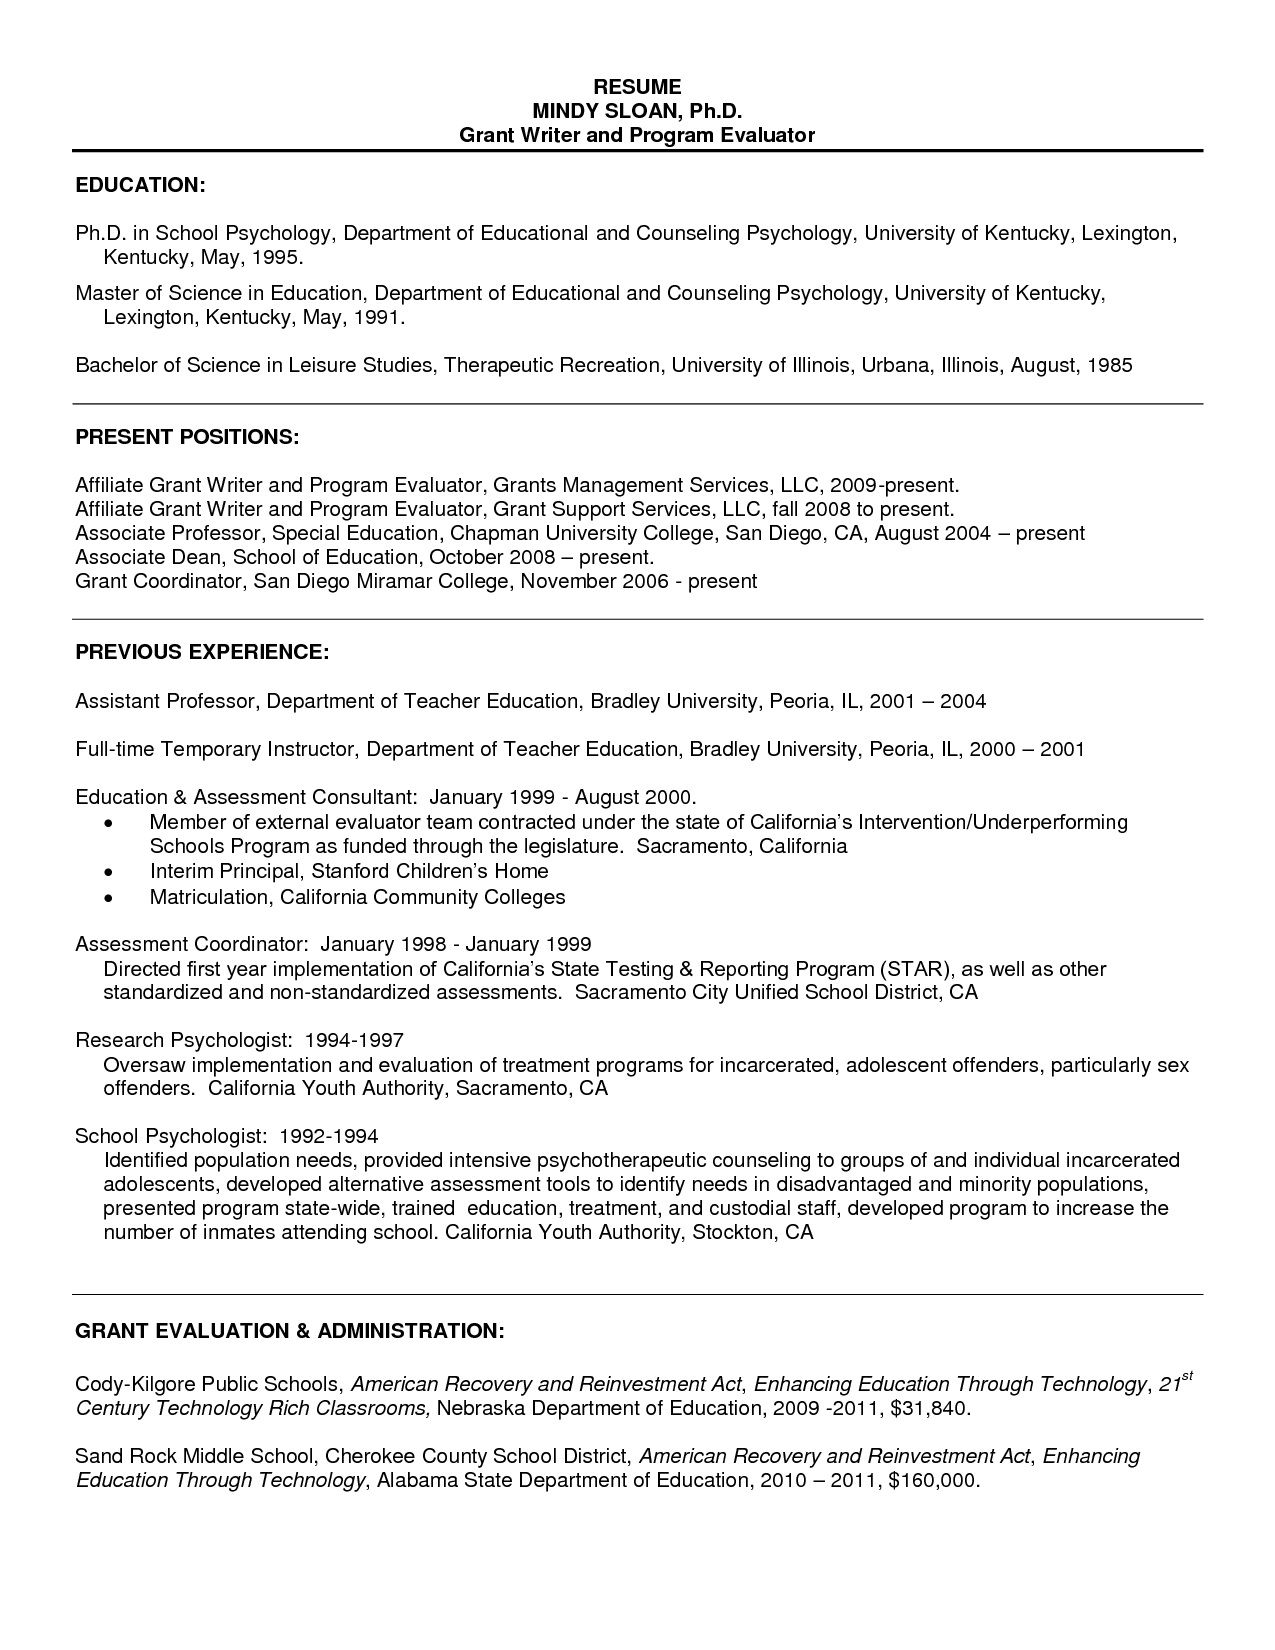 Resume Sample For Psychology Graduate